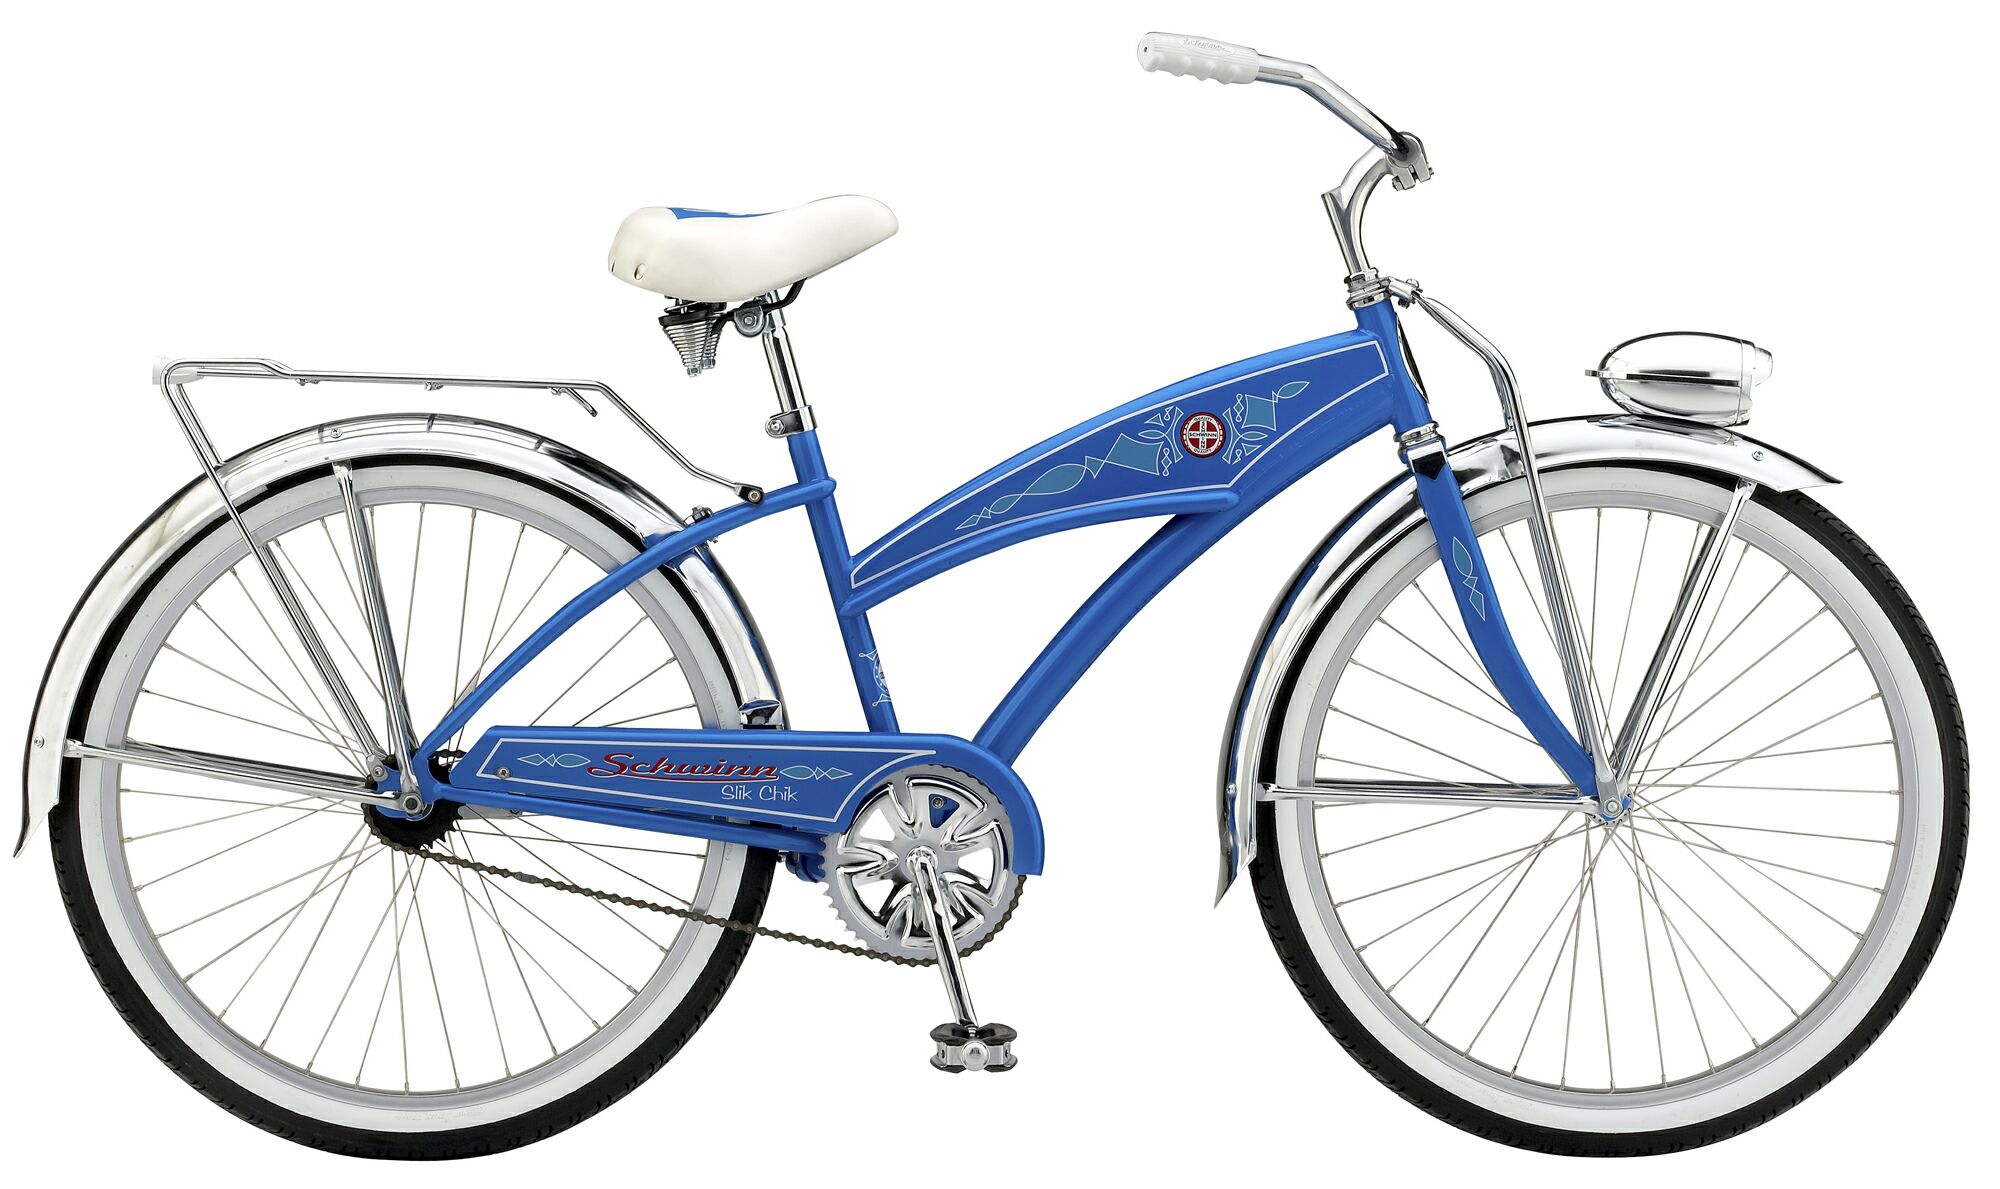 Build a Blue Bike | Entrepreneur The Arts is now @ blog ...